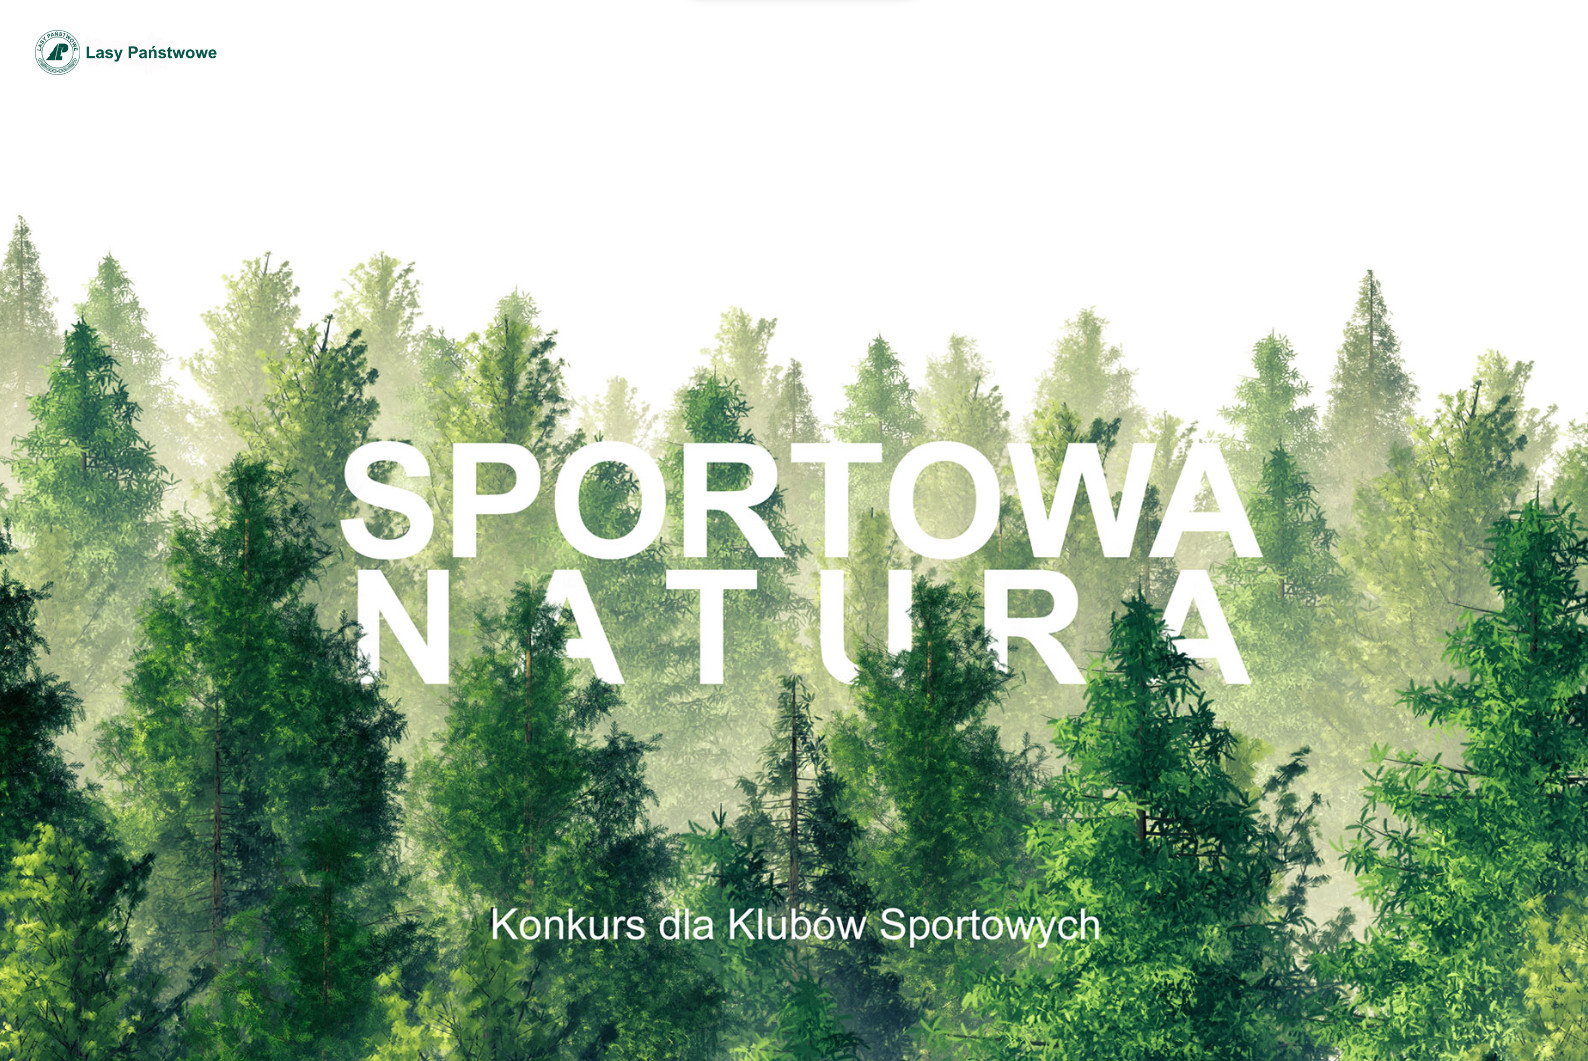 "Sportowa Natura". Konkurs dla klubów sportowych